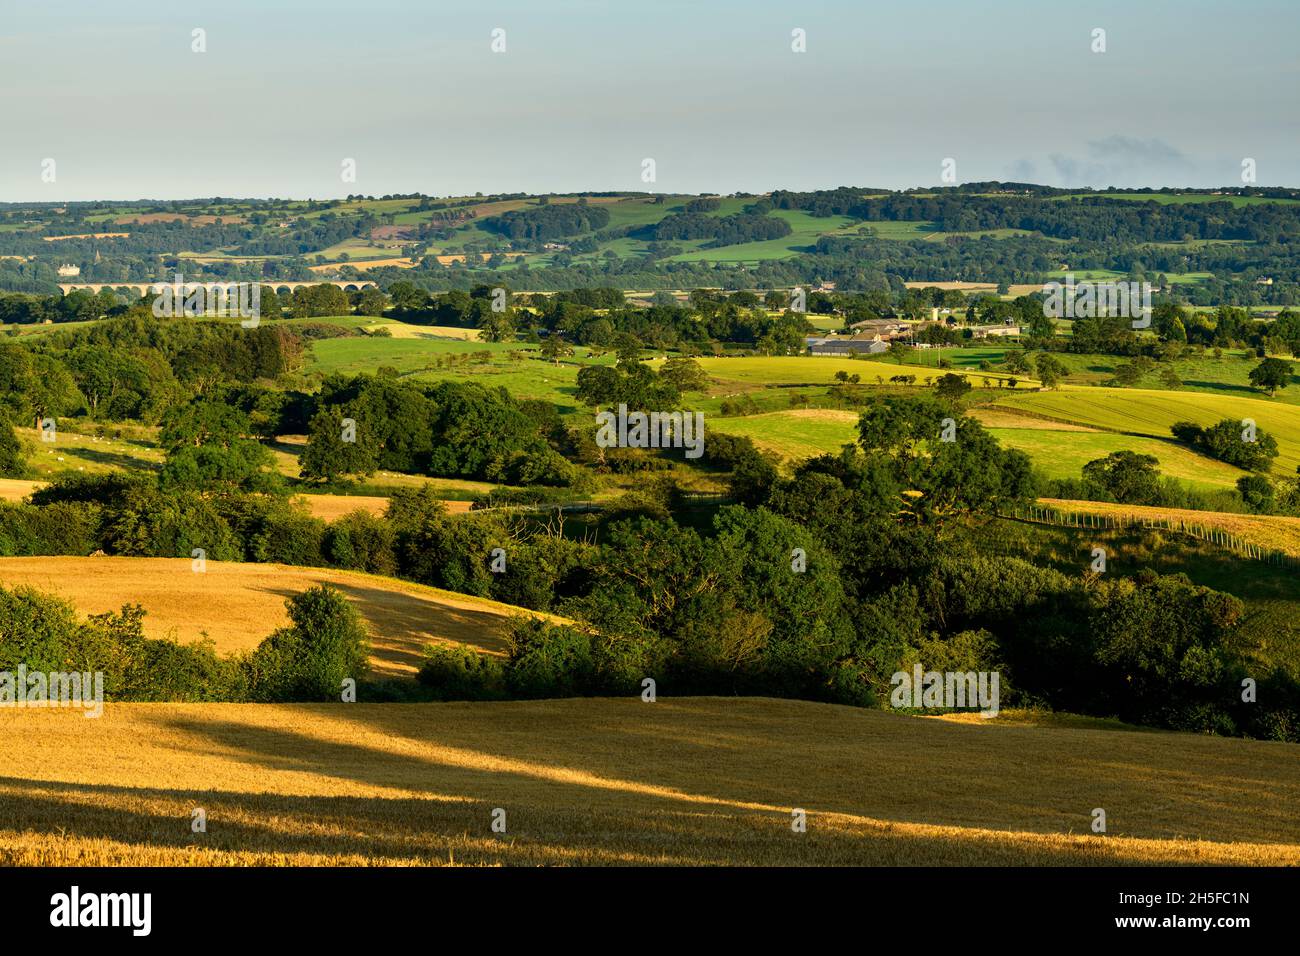 Campagne de Wharfedale ensoleillée (large vallée verte, pente à flanc de colline, cultures arables, champs de blé doré, pont ferroviaire) - North Yorkshire England UK. Banque D'Images